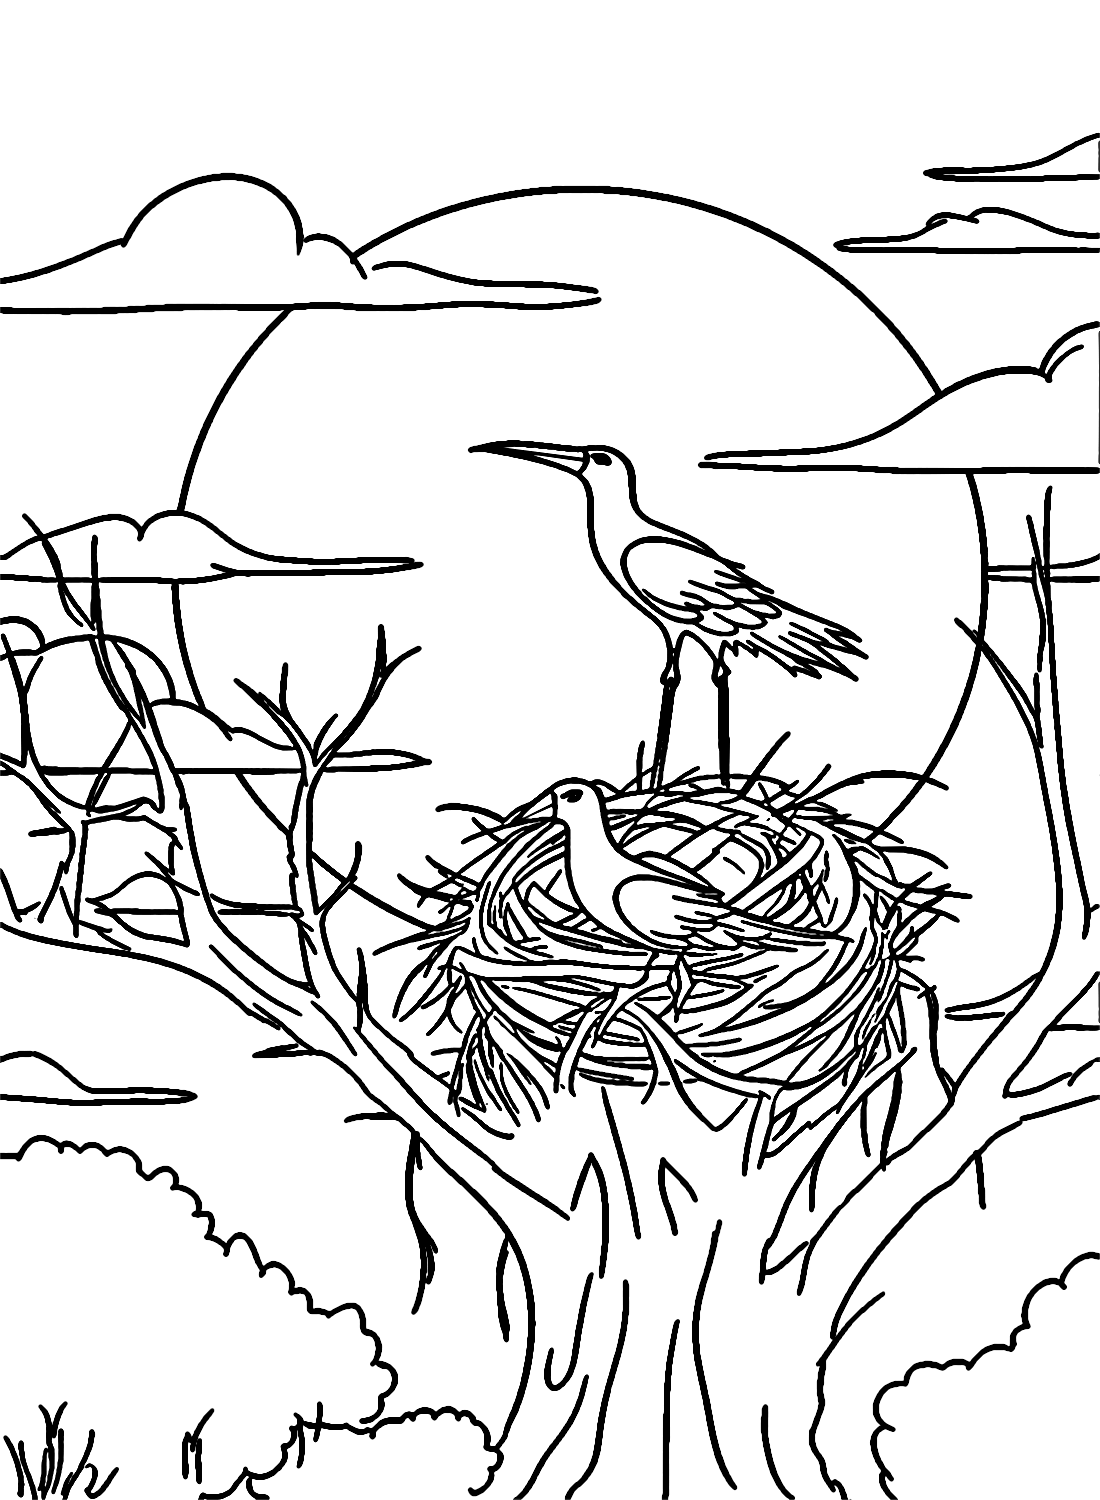 Les cigognes nichent au sommet d'un grand arbre de Stork